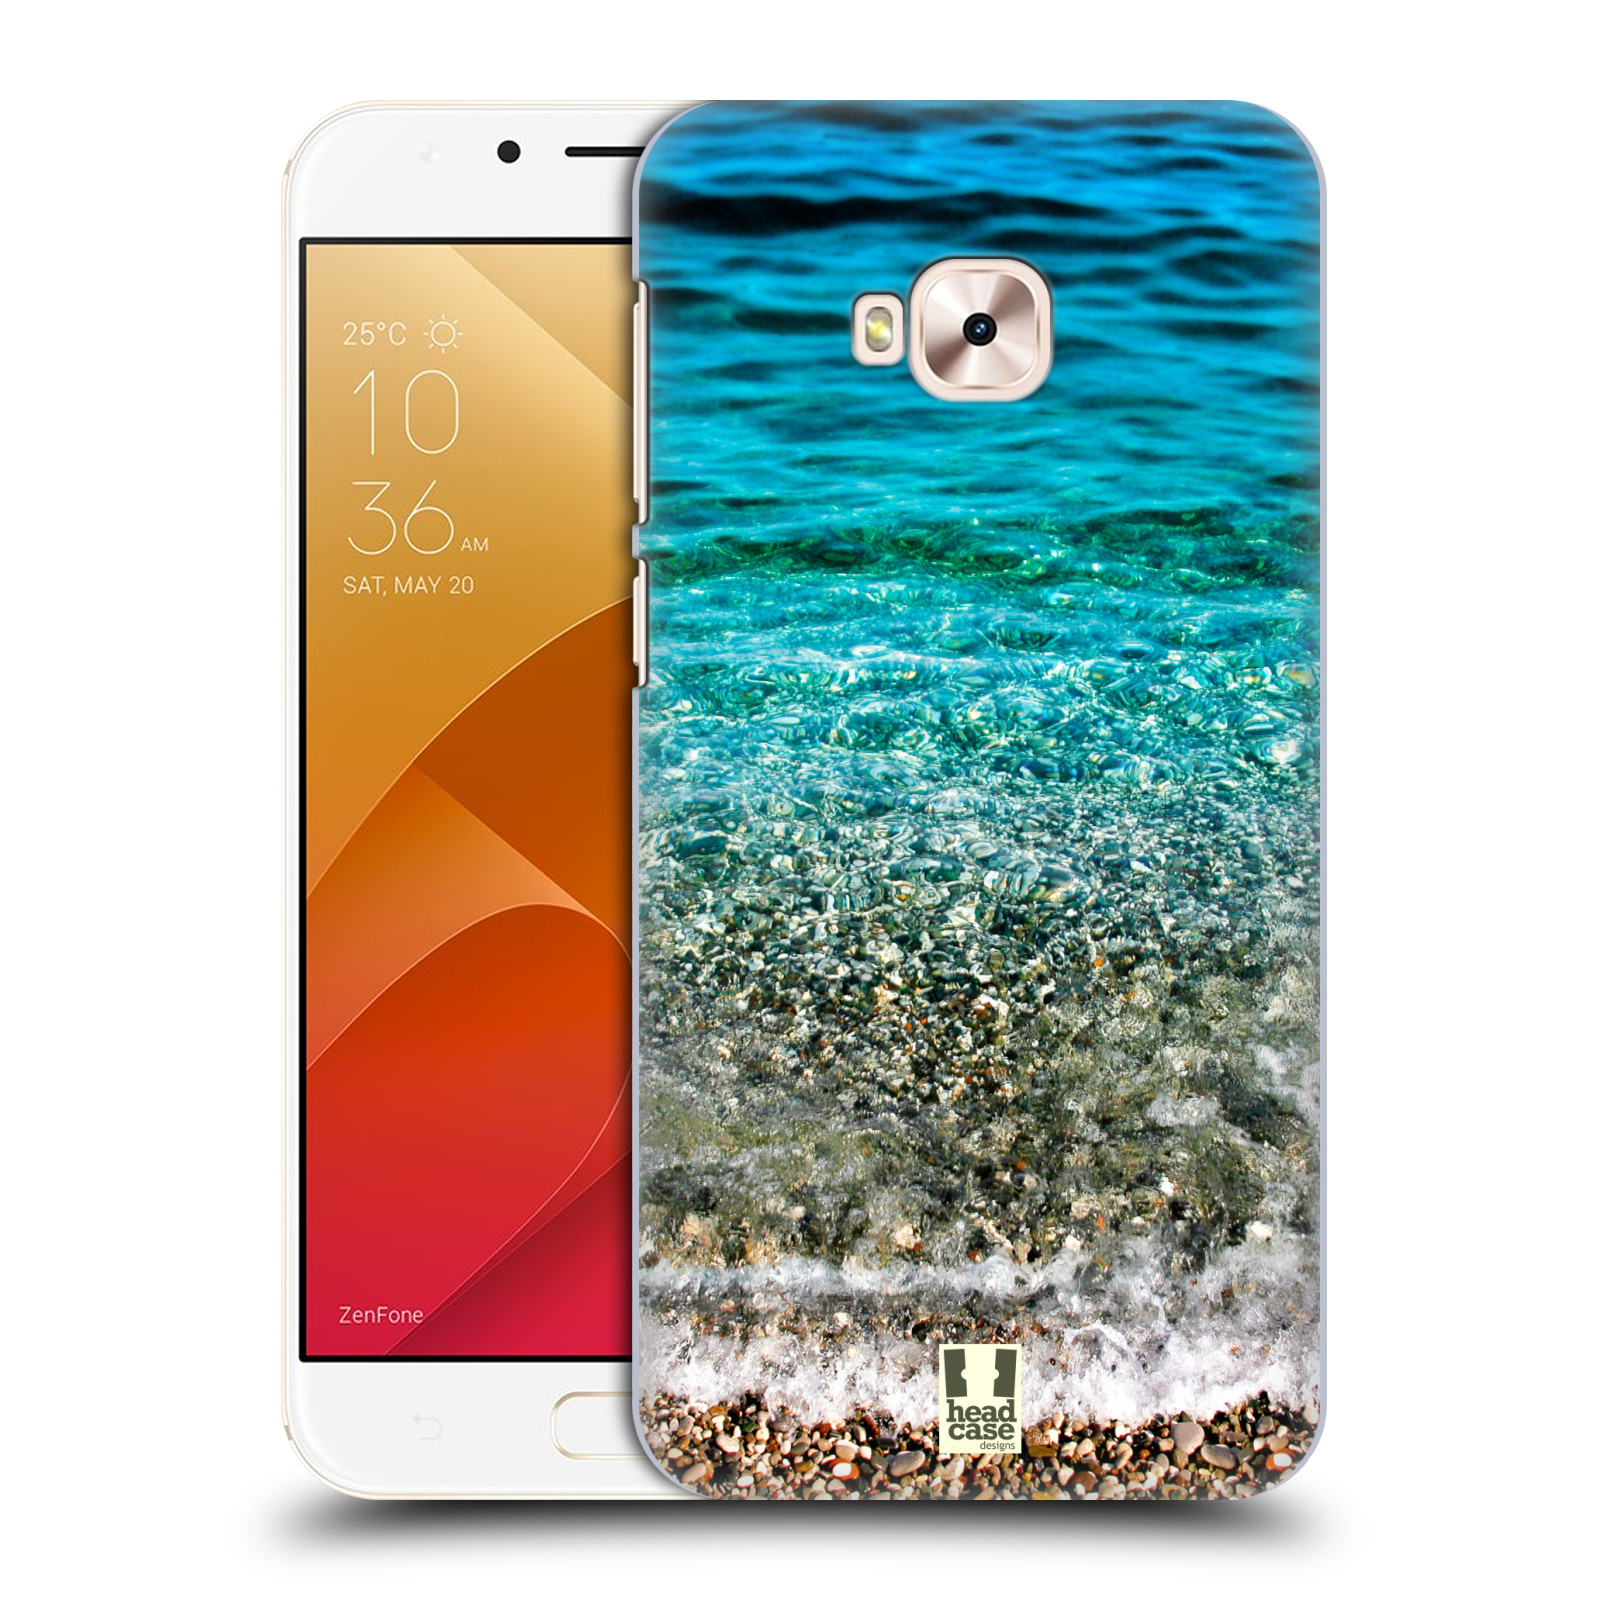 HEAD CASE plastový obal na mobil Asus Zenfone 4 Selfie Pro ZD552KL vzor Pláže a Moře PRŮZRAČNÉ MOŘE S OBLÁZKY